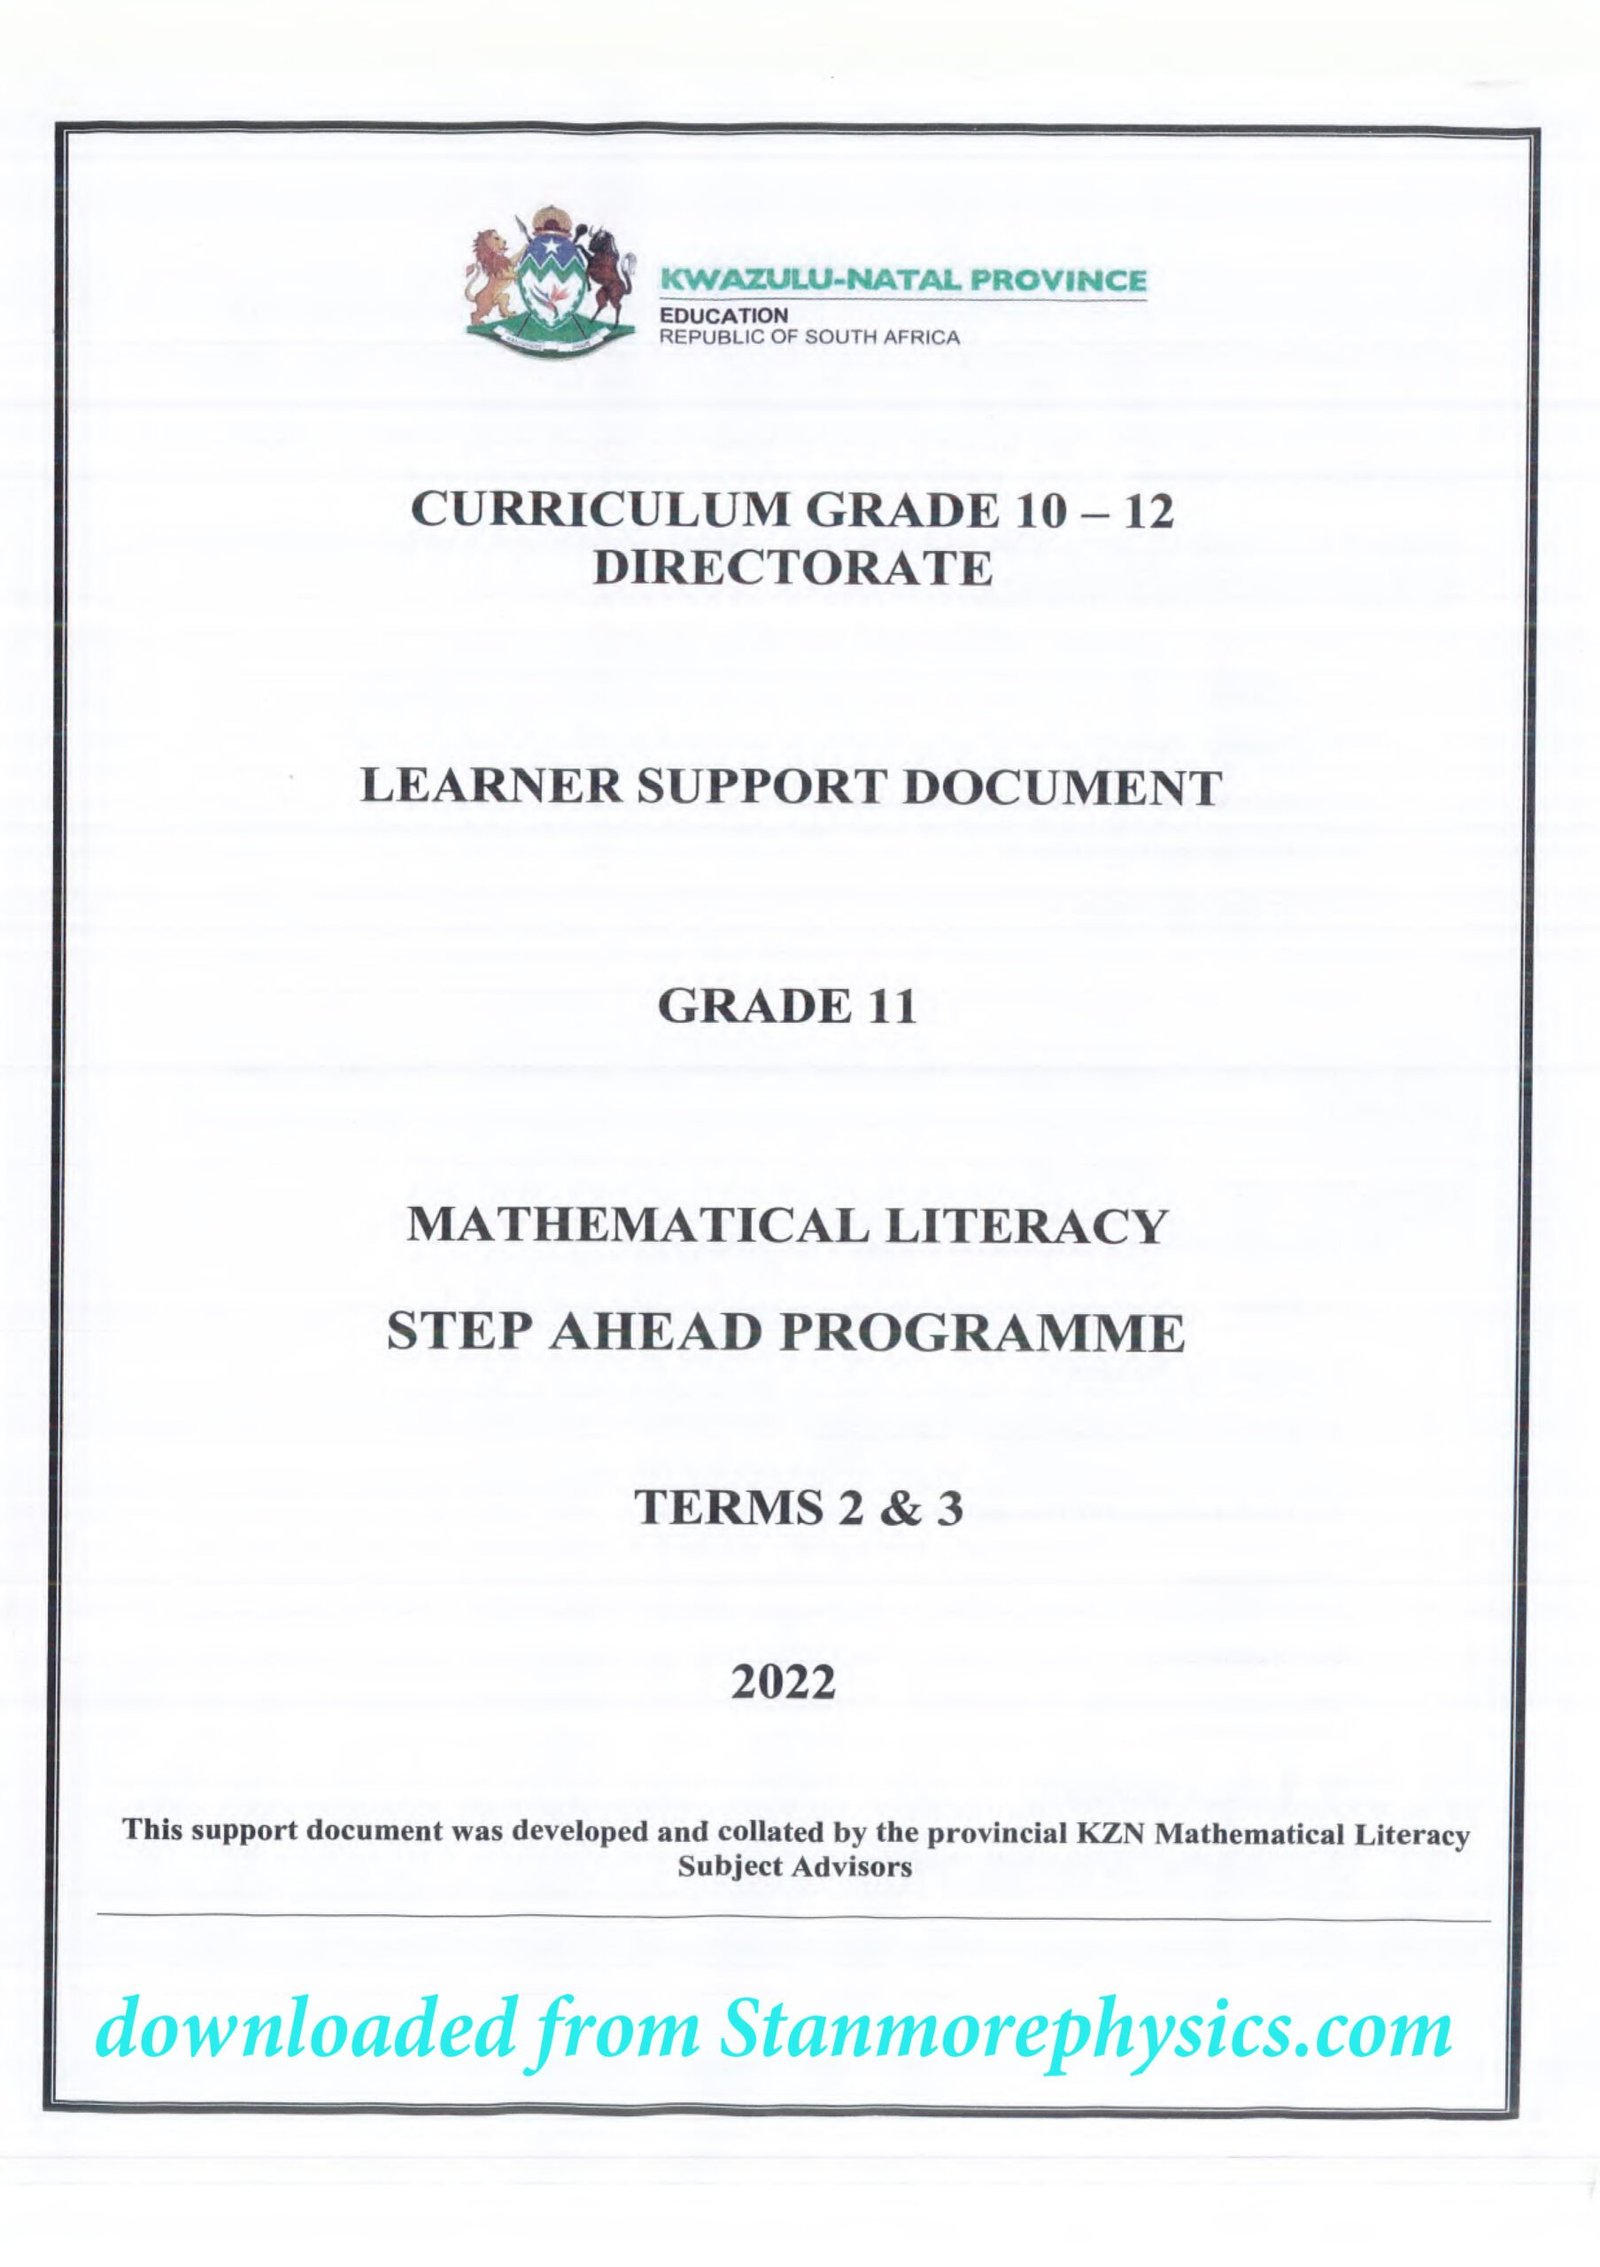 mathematics literacy grade 11 assignment 2022 term 2